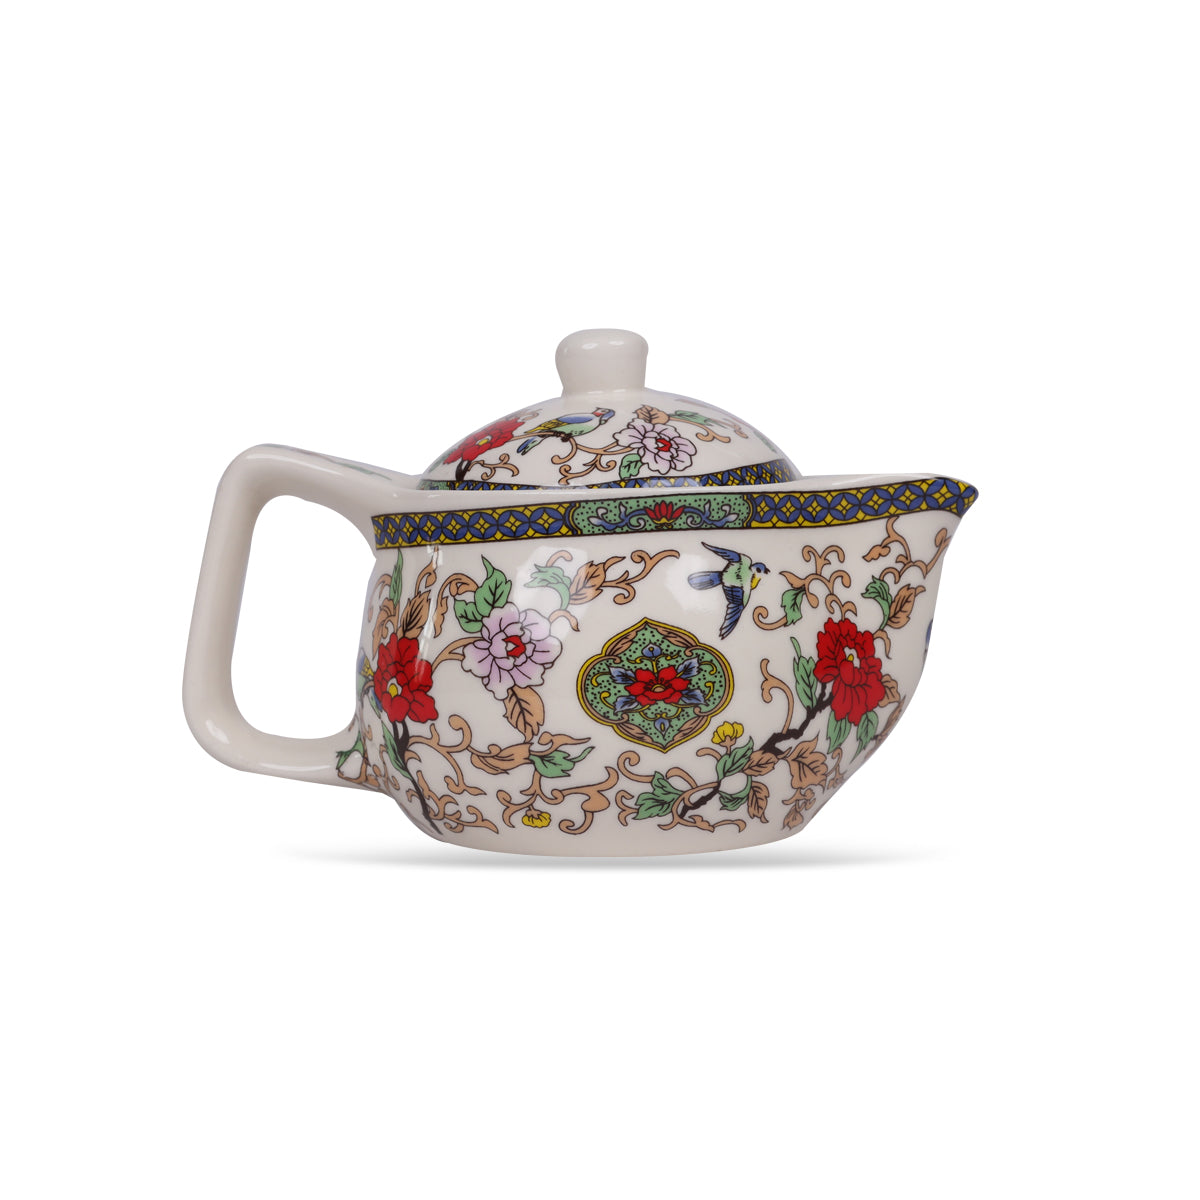 Tea pot, buy tea pot online, buy tea pot with strainer online, buy small tea pot